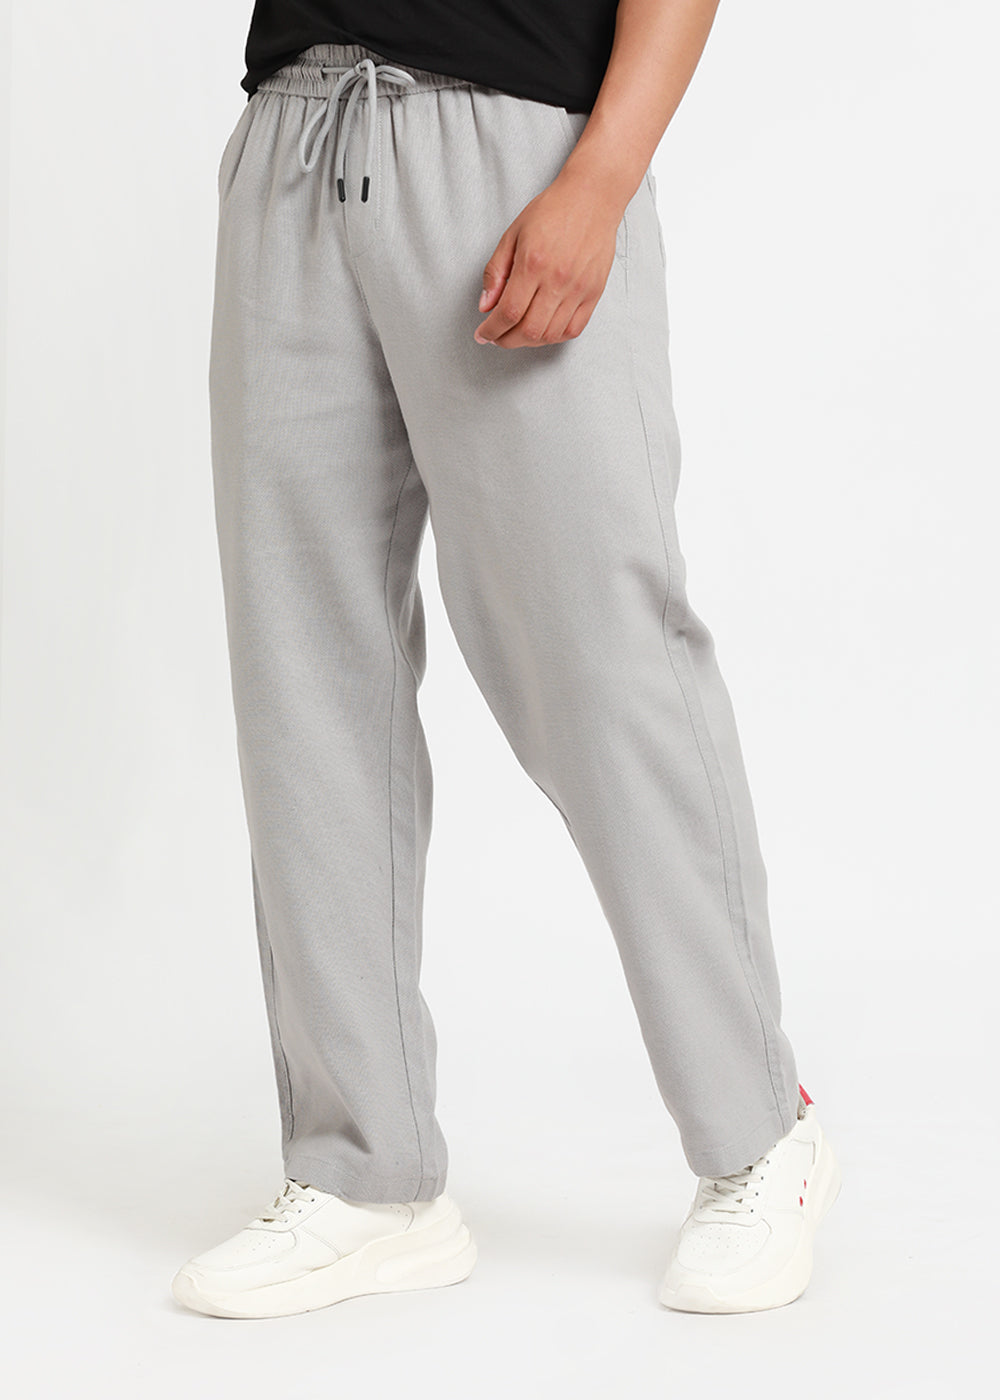 Nimbus Grey Textured Pants